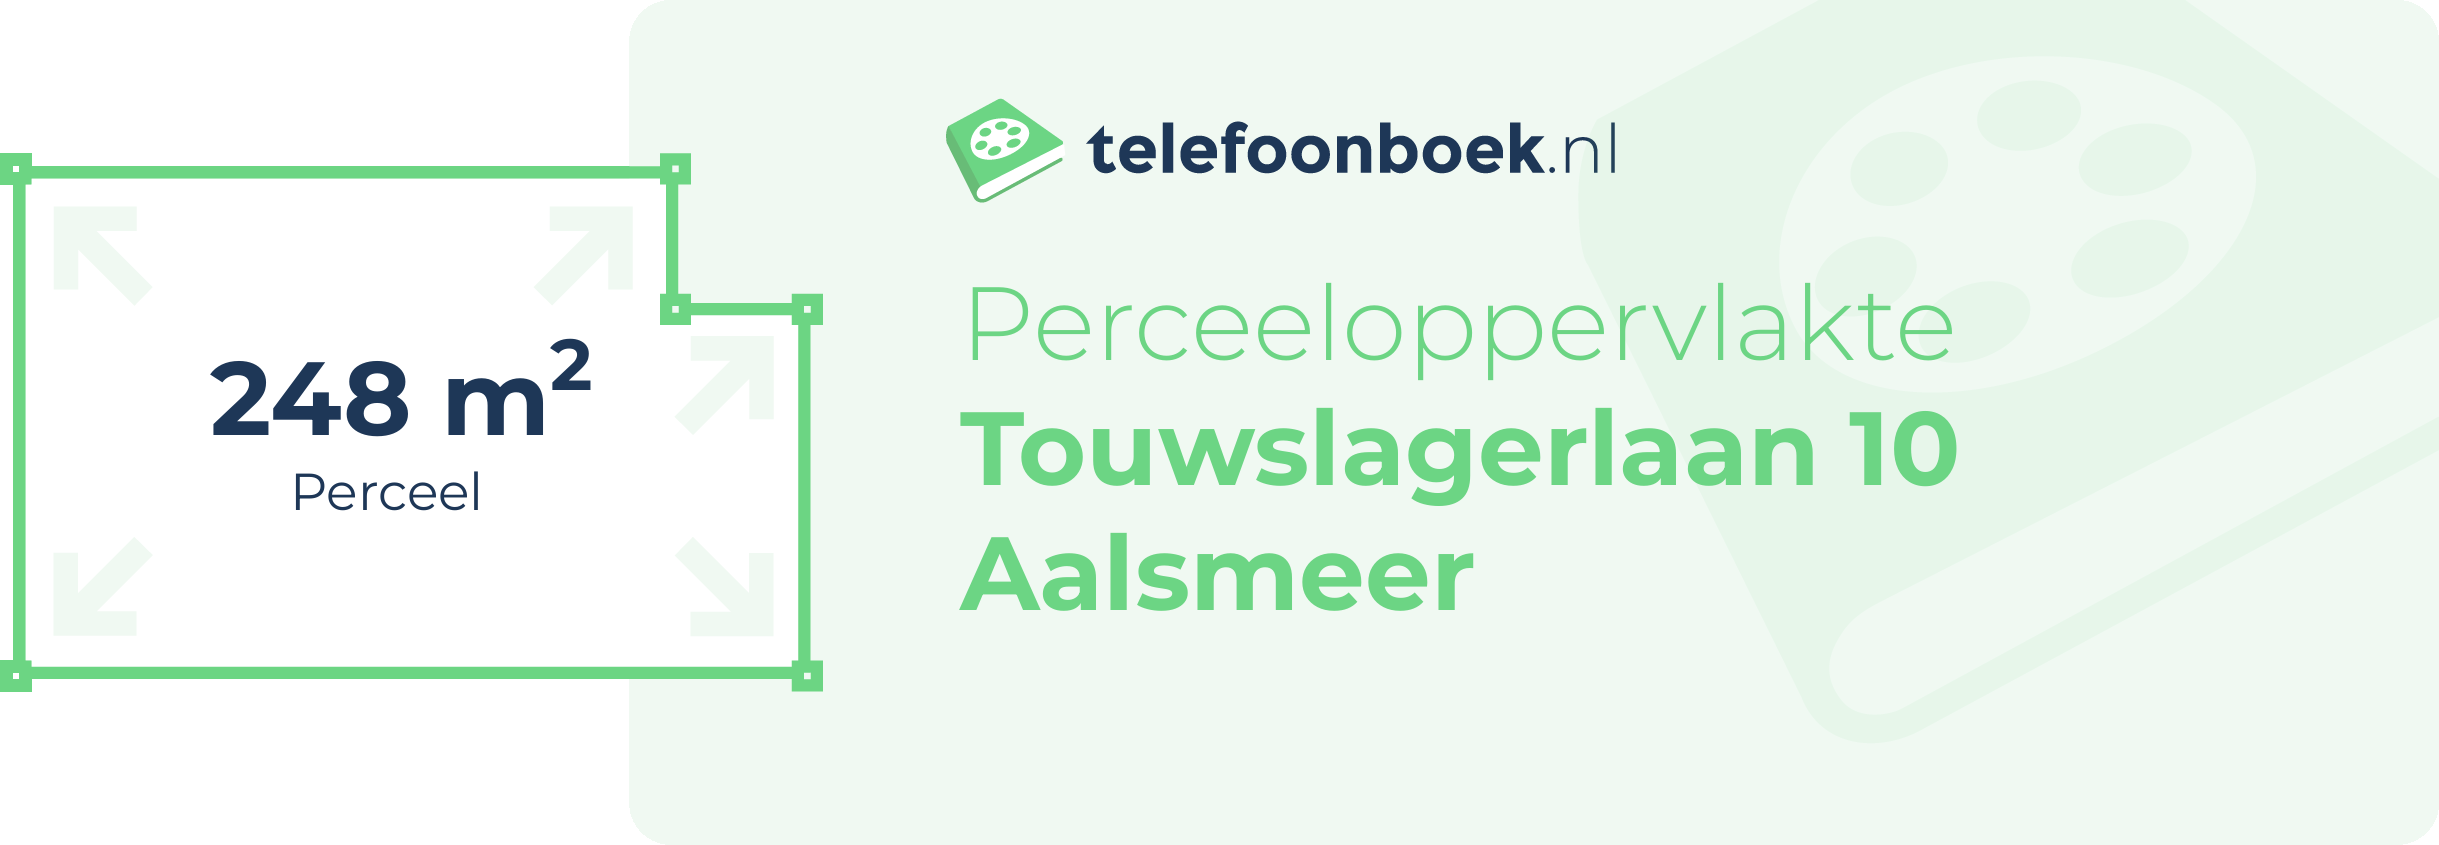 Perceeloppervlakte Touwslagerlaan 10 Aalsmeer